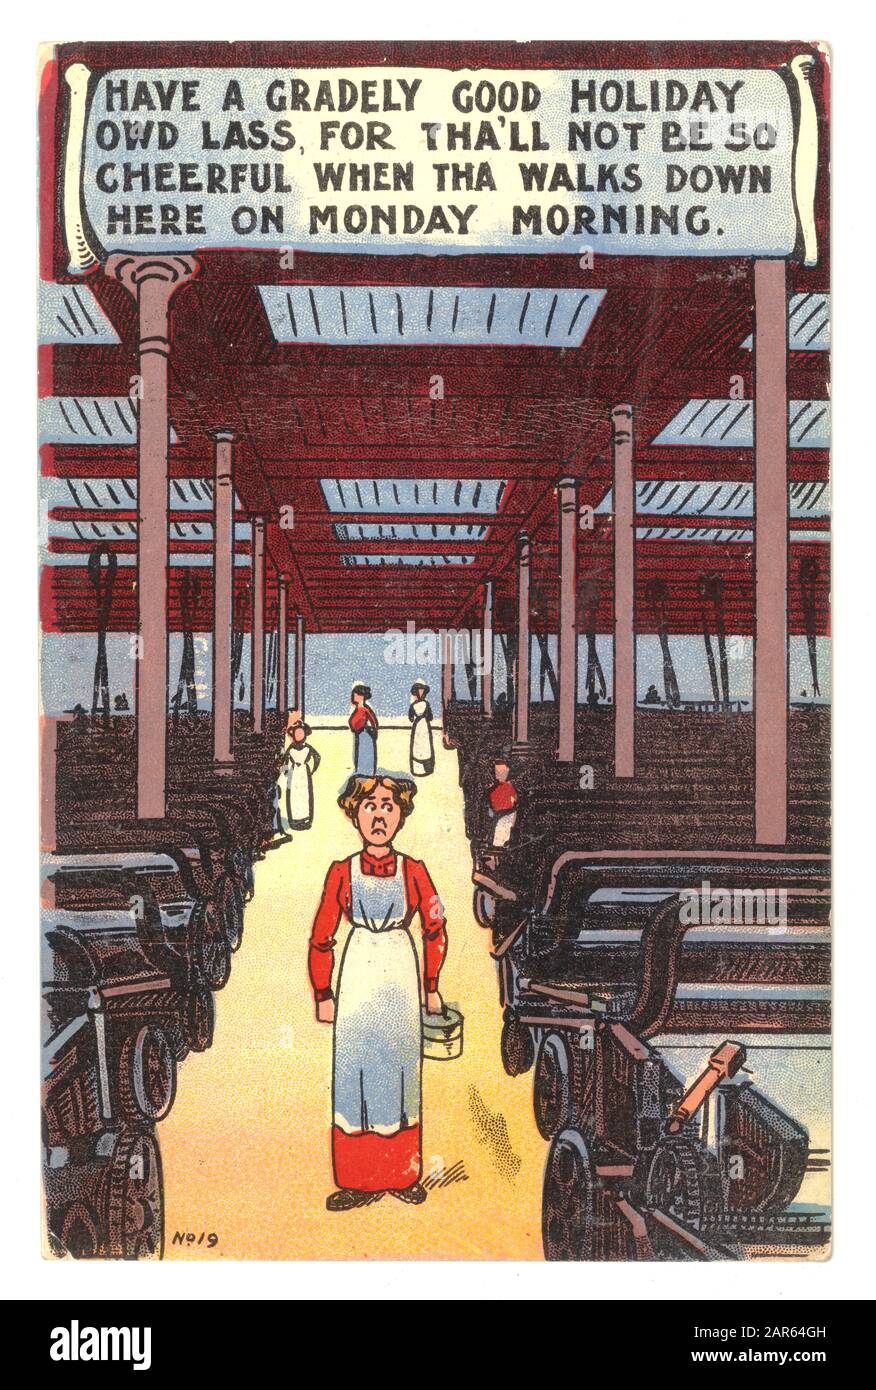 Die originale Comic-Postkarte aus dem frühen 19. Jahrhundert, auf der die Arbeiterin der Baumwollfabrik Lancashire im Urlaub war, fordert die Arbeiterin auf, das Beste aus ihrem jährlichen Urlaub oder ihrer Weckwoche zu machen, bevor sie wieder in den düsteren Alltag des Arbeitsplatzes in Großbritannien zurückkehrt. Ungefähr 1910. Stockfoto